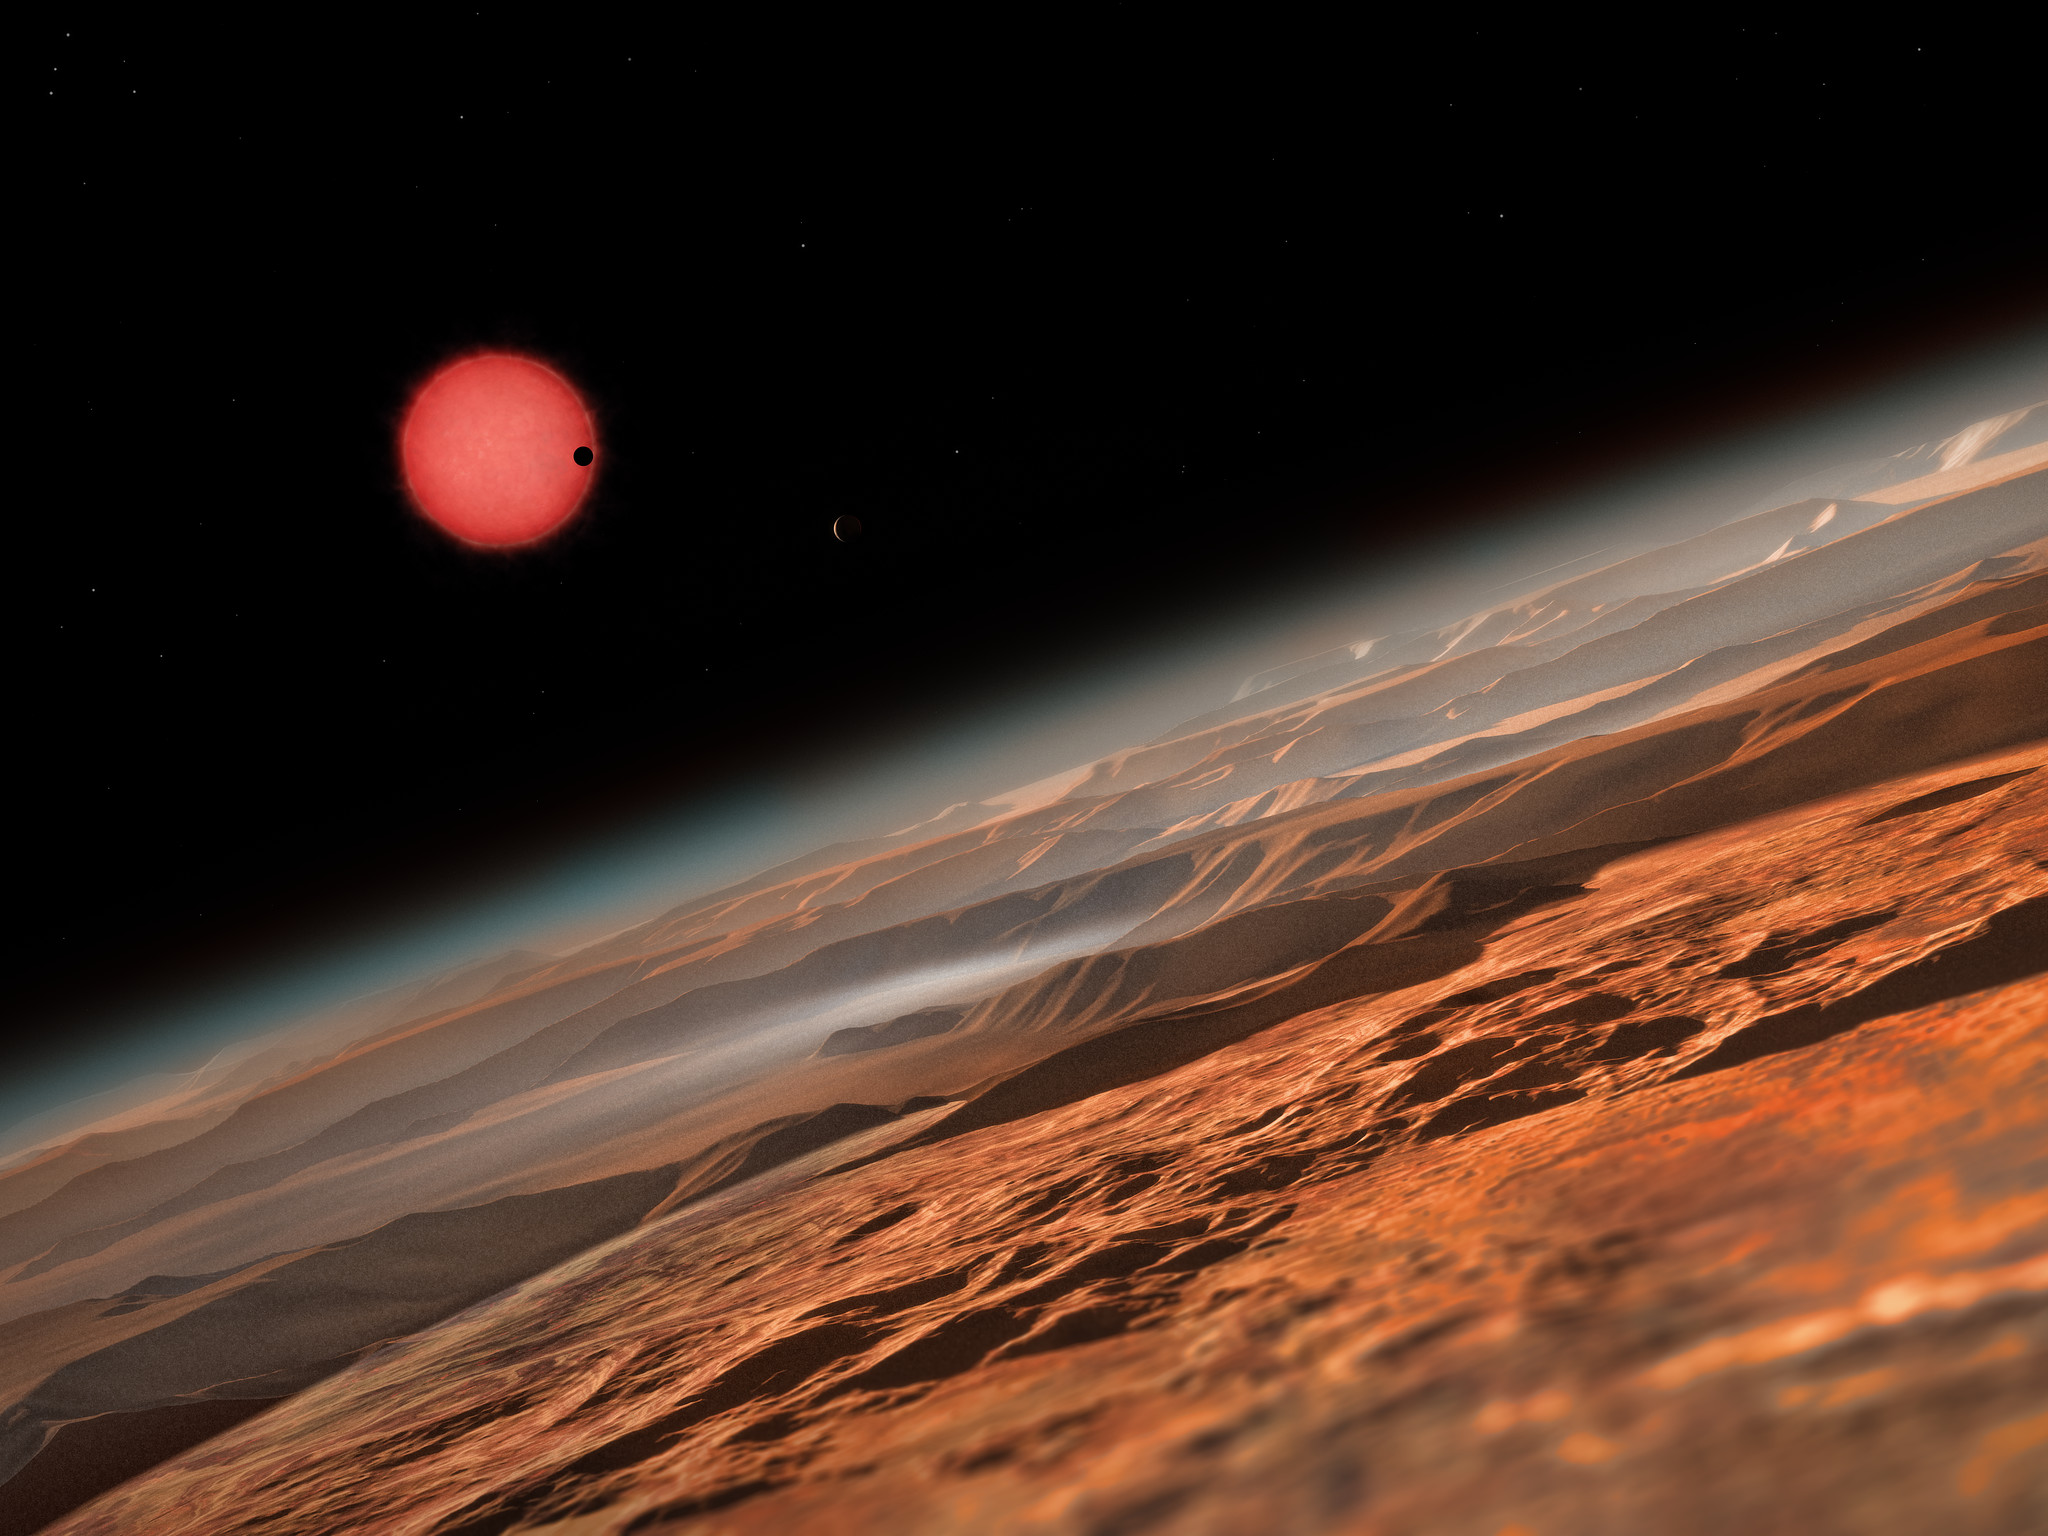 Une vue d’artiste depuis les environs d’une des trois planètes en orbite autour de l'étoile Trappist-1, une naine rouge très froide située à seulement 40 années-lumière de la Terre. Ce sont les premières planètes découvertes autour d’une telle étoile si petite et si peu lumineuse. Sur l'image, l’une des planètes internes passe devant le disque de sa petite et peu lumineuse étoile. © ESO, M. Kornmesser